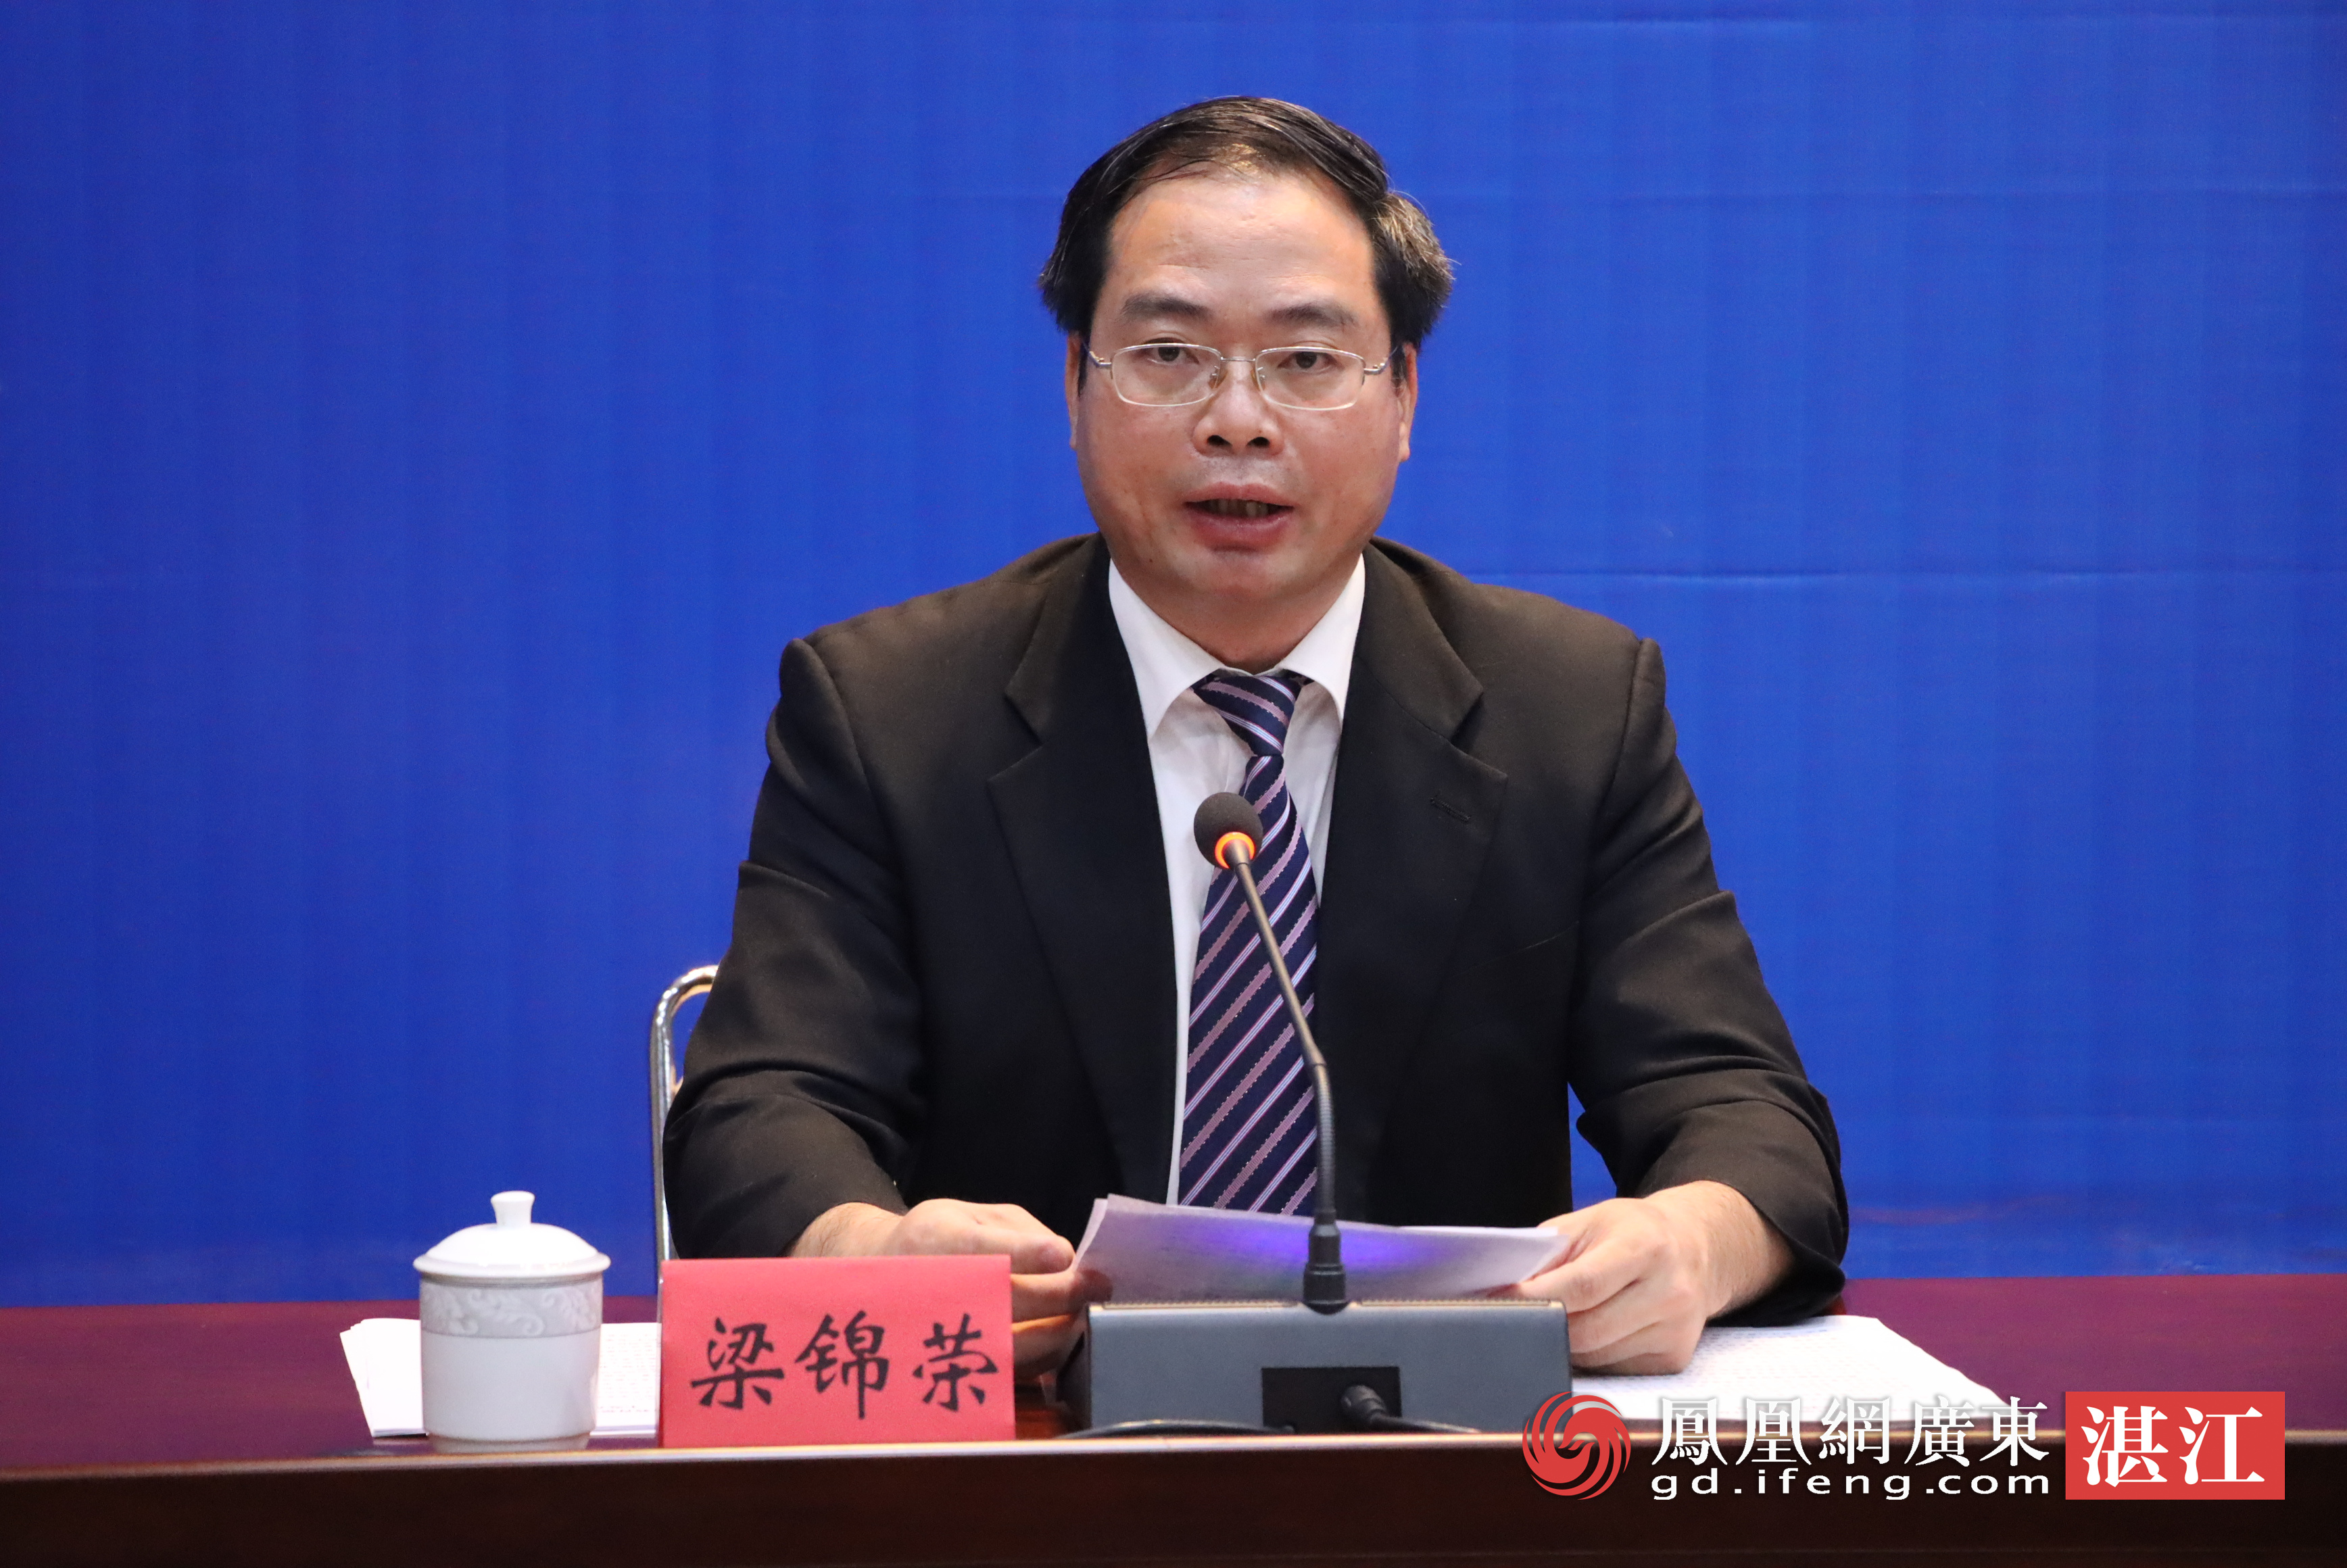 湛江市召开政法队伍教育整顿第二次新闻发布会